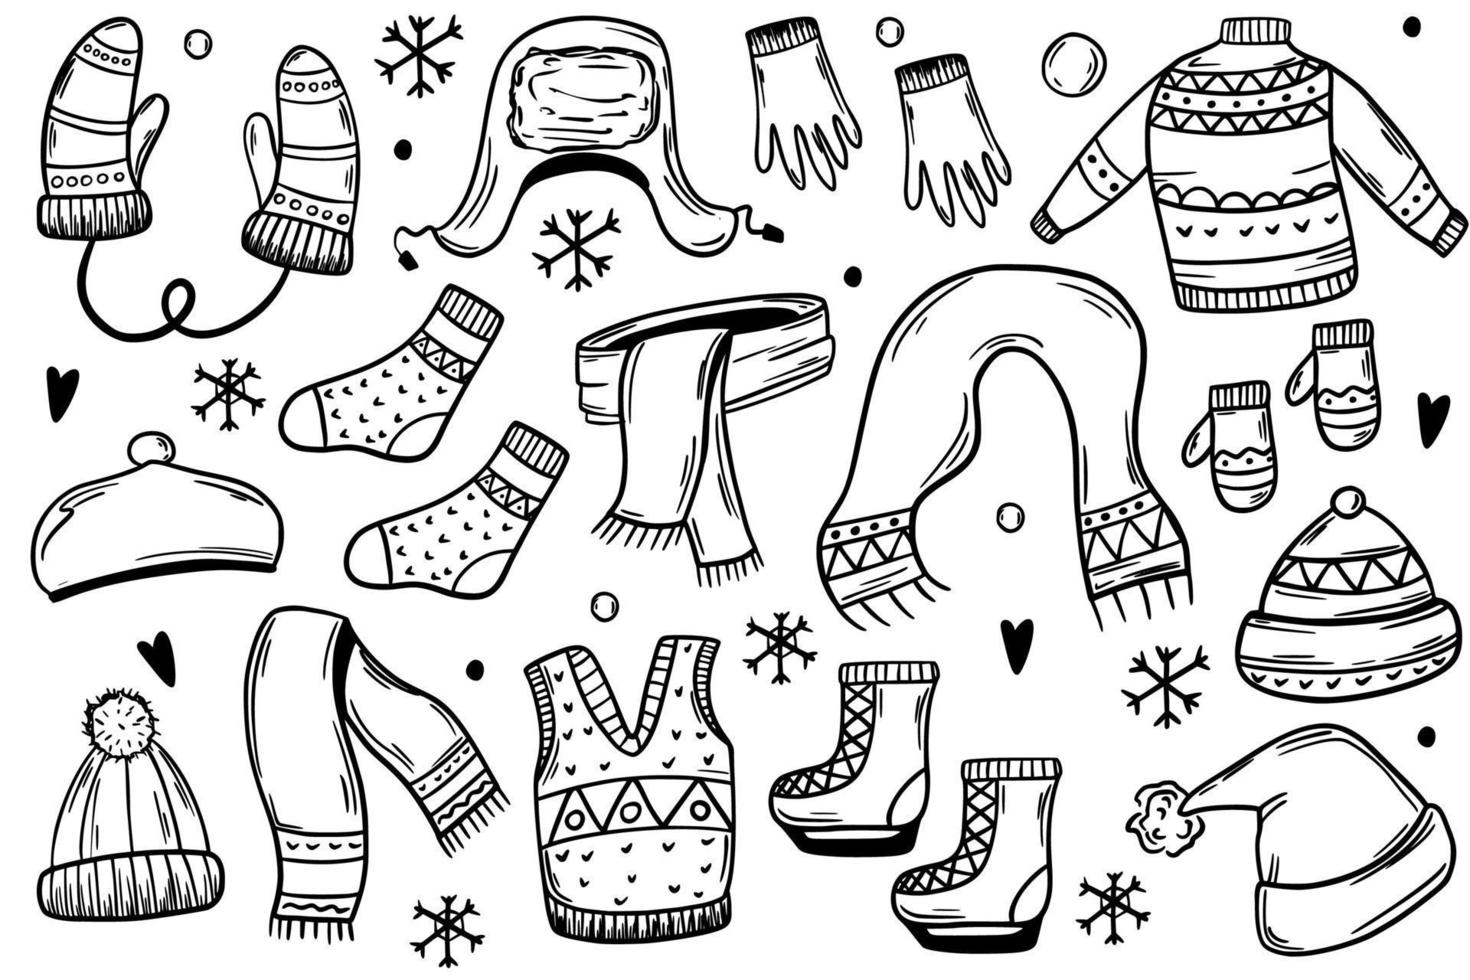 conjunto de roupas de inverno, chapéus, luvas, patins, luvas. roupas quentes. ilustração vetorial no estilo de desenho. vetor